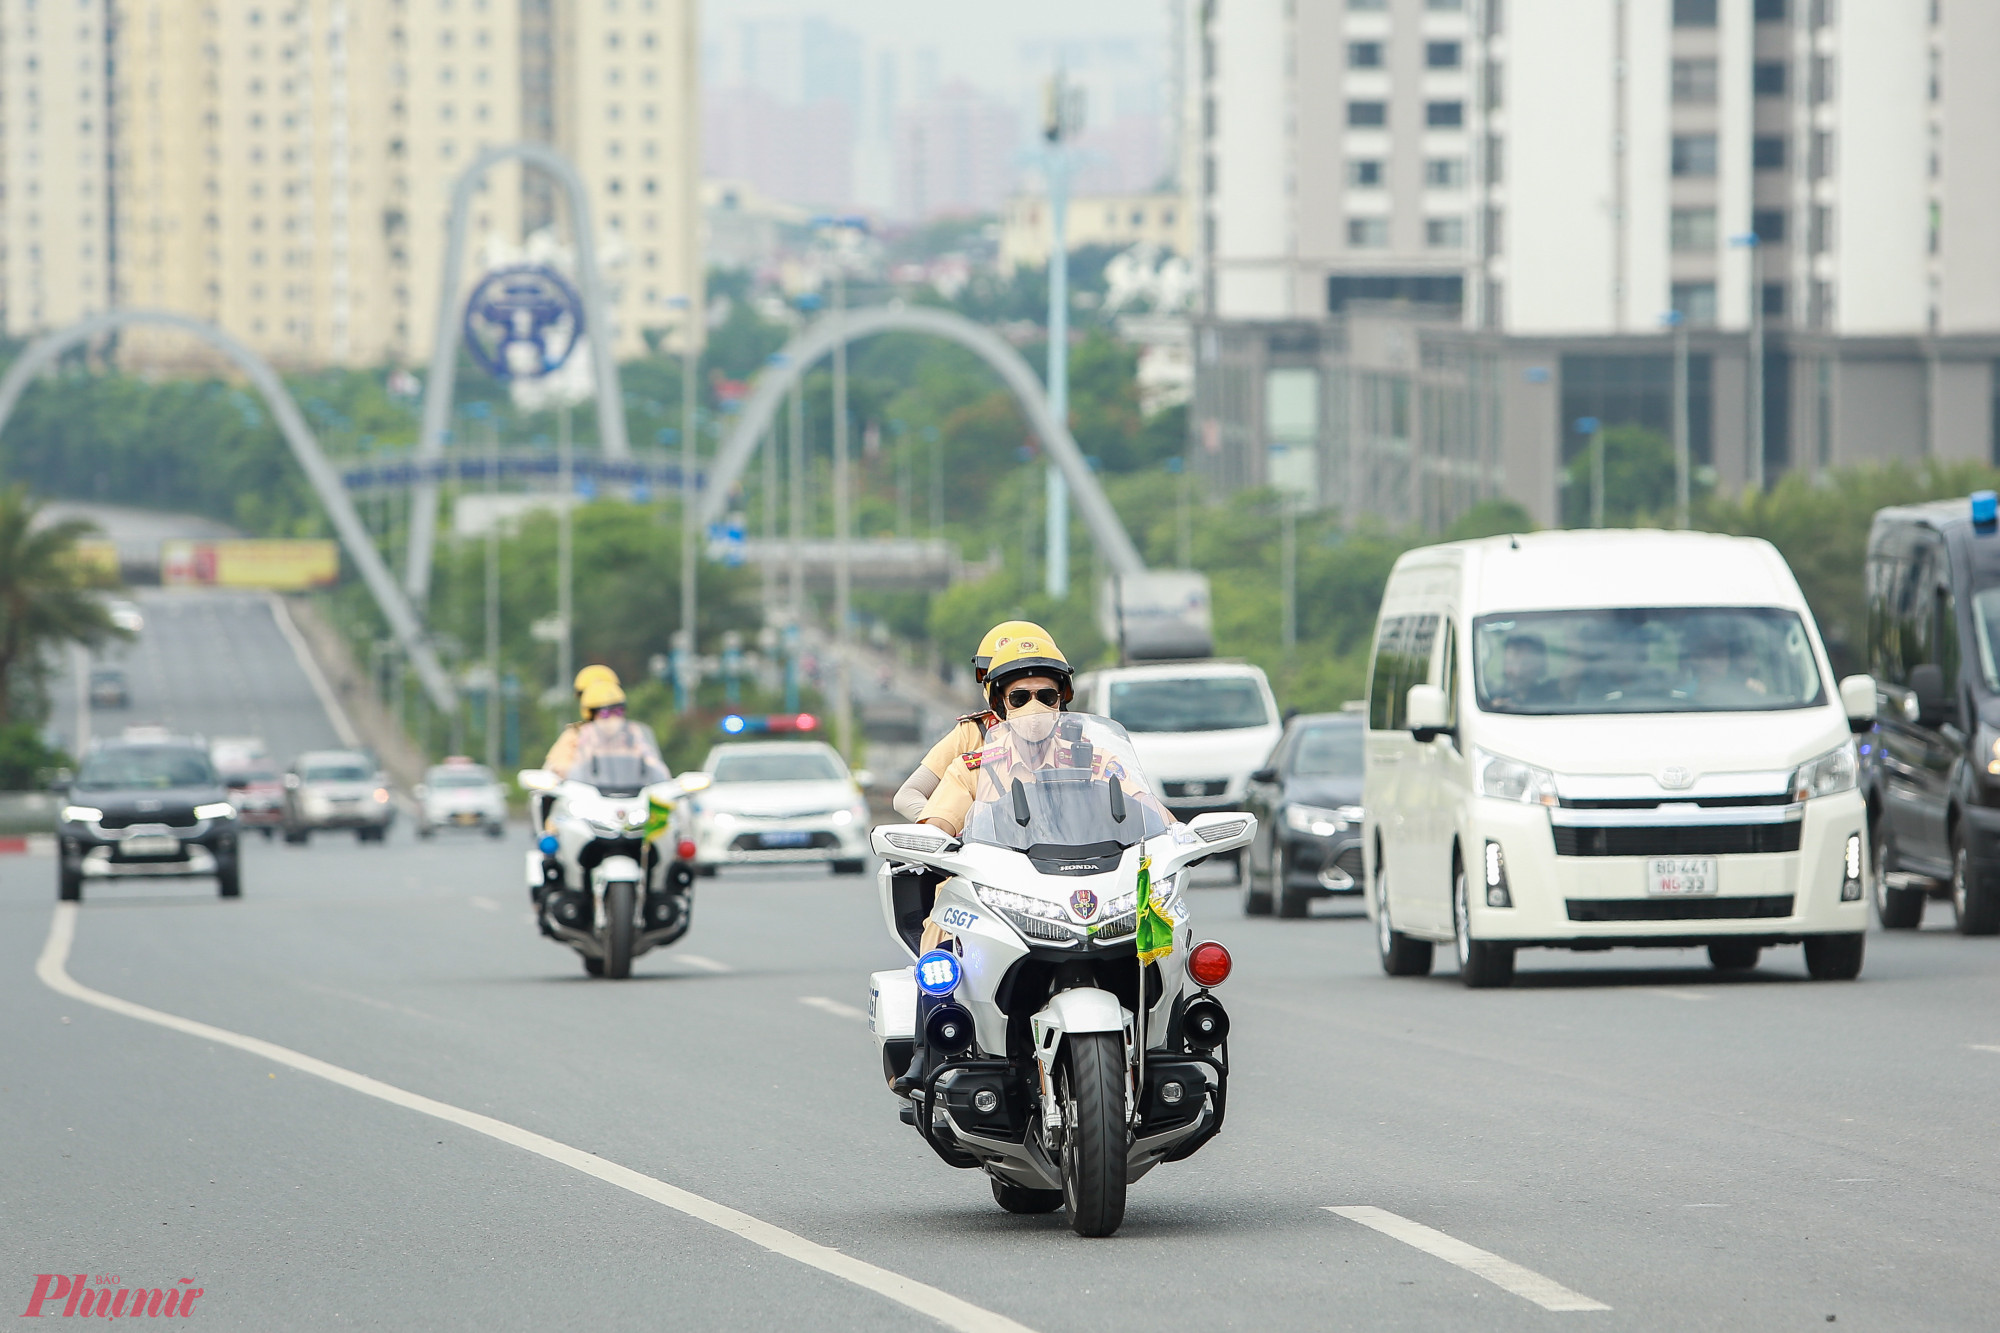 Sáng 19/6, Phòng CSGT - Công an TP Hà Nội ra quân diễn tập cùng dàn siêu mô tô Honda Goldwing 1800cc để thực hiện nhiệm vụ đón Tổng thống Nga Vladimir Putin sang thăm Việt Nam.\